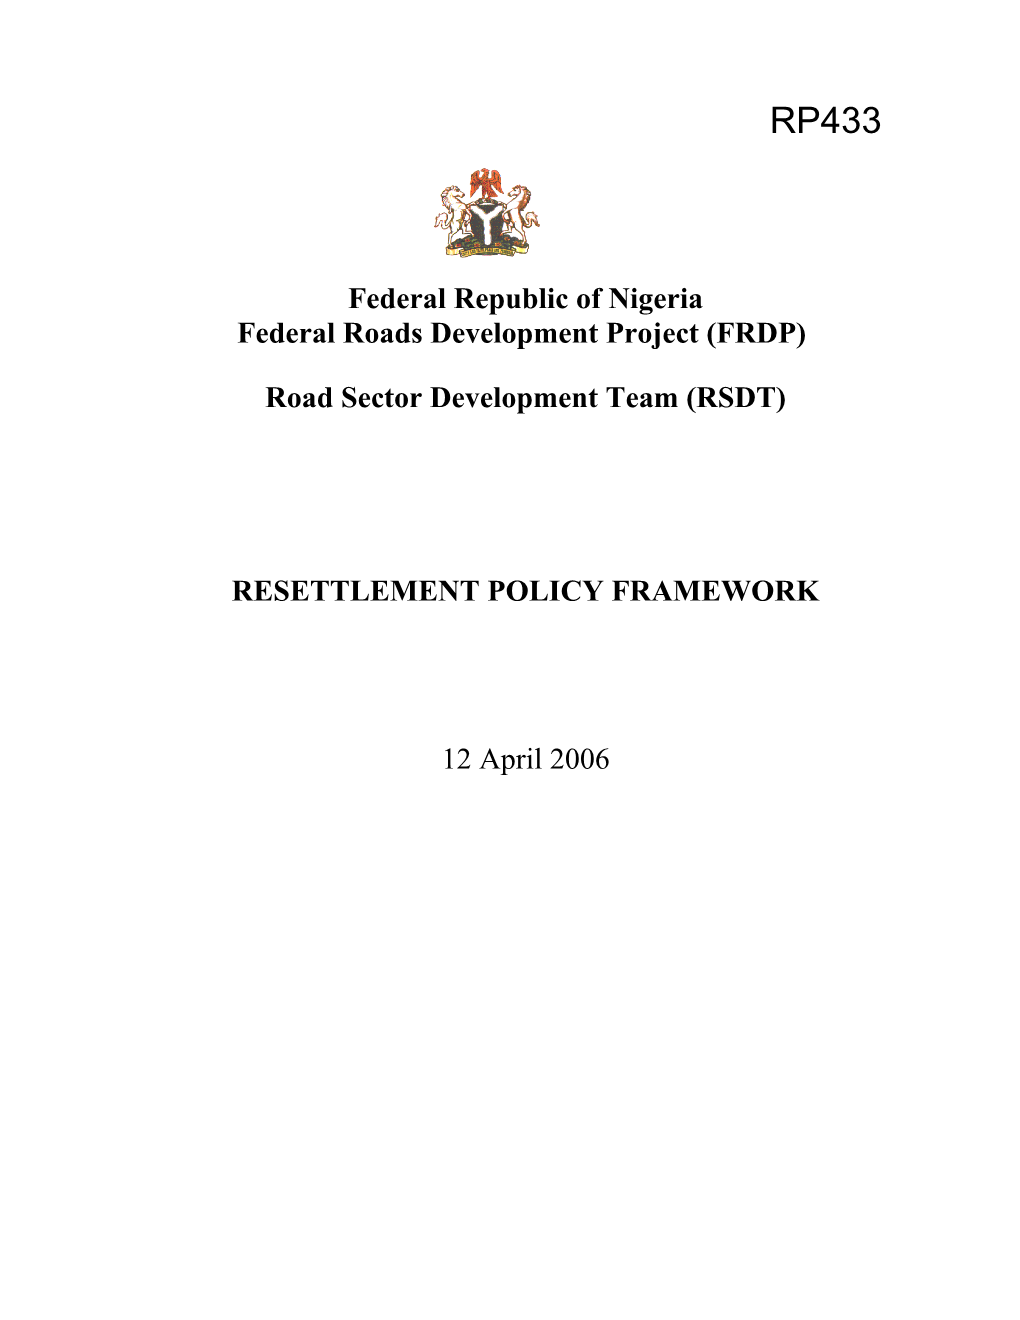 FRDP Resettlement Policy Framework 1